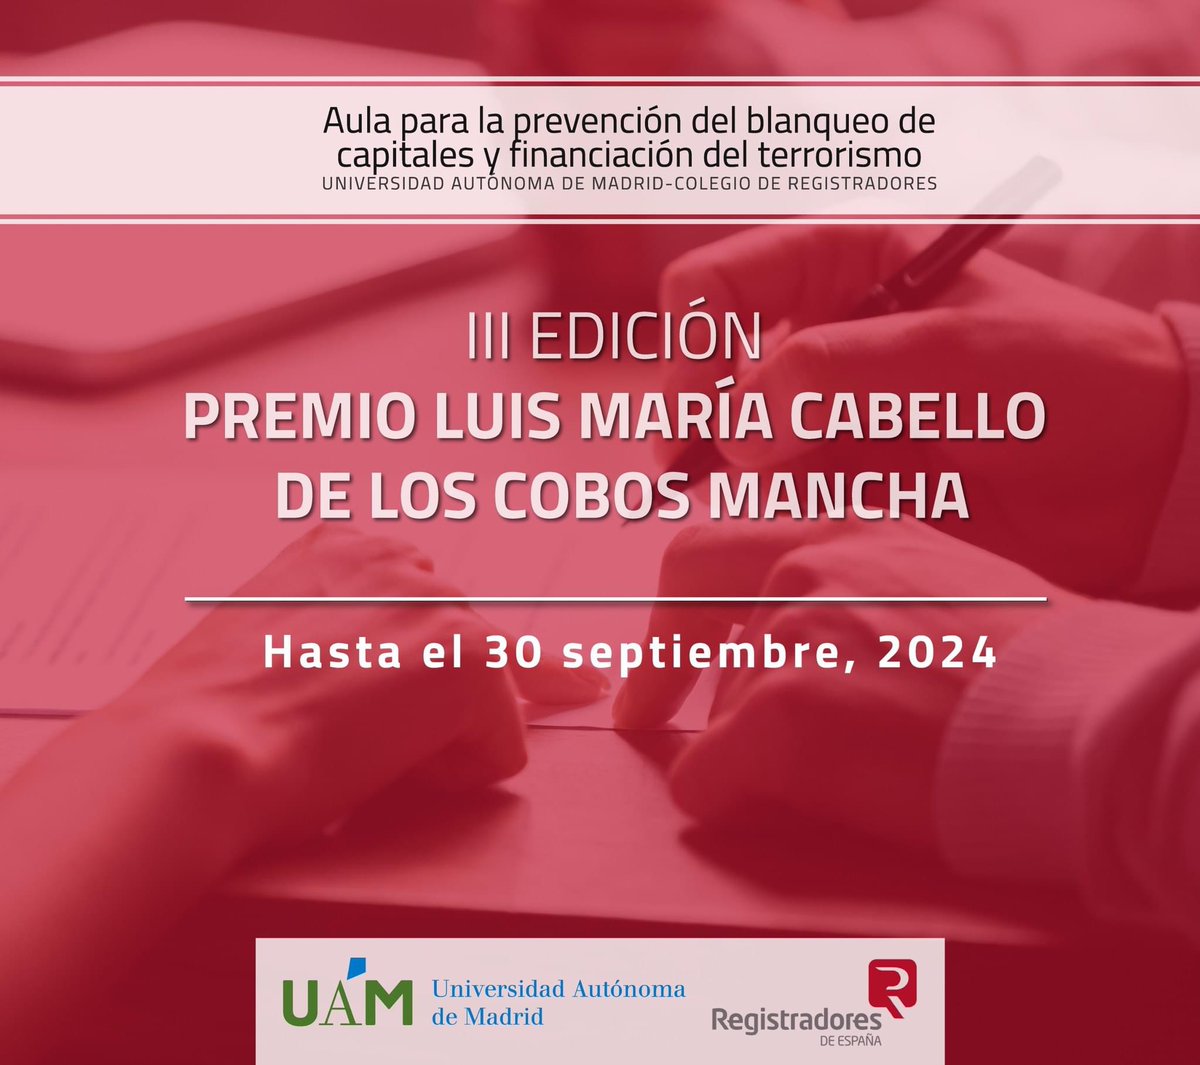 Convocada la 3ª edición del Premio Luis María Cabello de los Cobos Mancha del Aula @UAM_Madrid @fuam_uam @Registrador_es para la prevención del blanqueo de capitales y financiación del terrorismo. Modalidades: 🎓Artículo académico 📰Artículo de prensa ℹ️cutt.ly/xw64cZR3